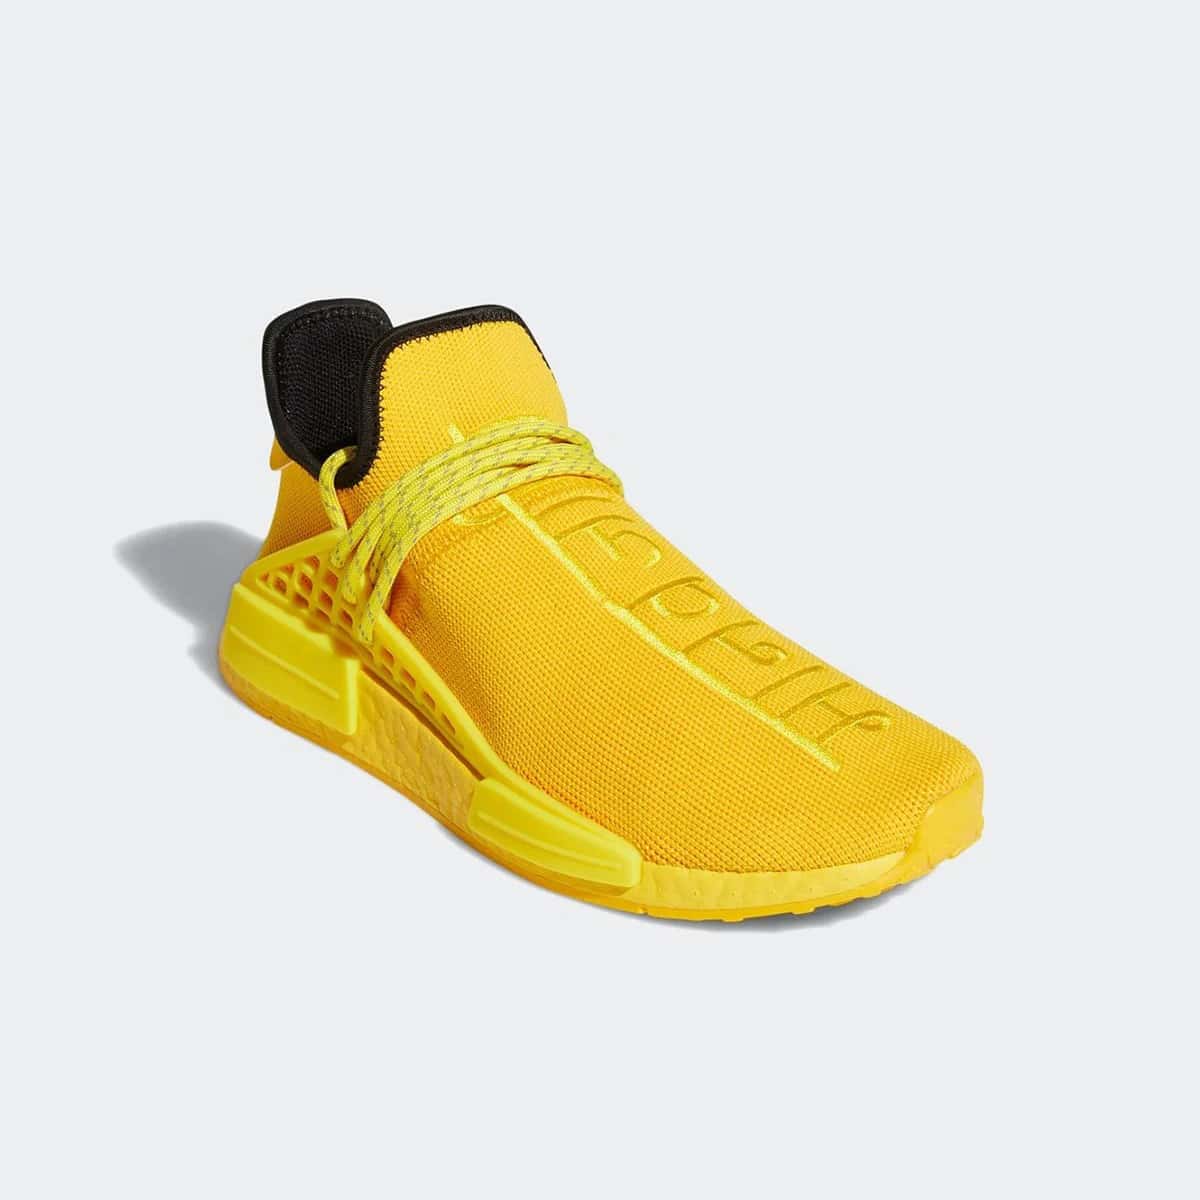 퍼렐 윌리암스 x 아디다스 NMD HU 트리플 옐로우(Pharrell Williams adidas Originals NMD HU Triple Yellow)-GY0091